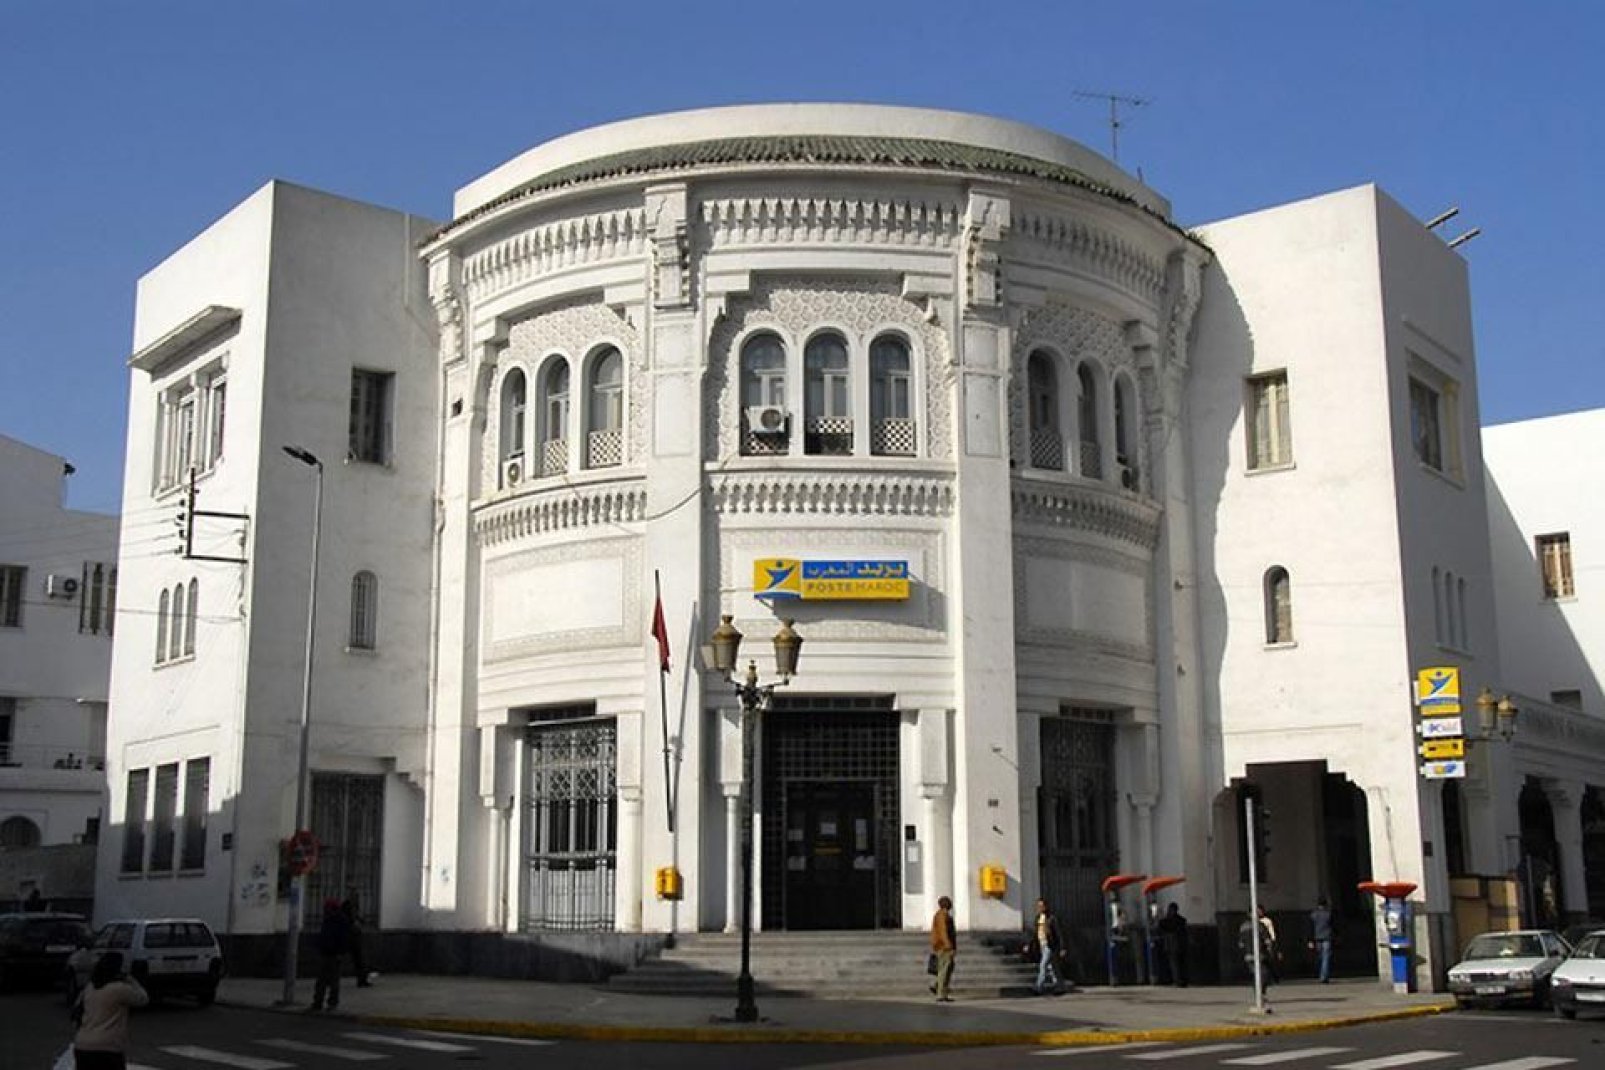 Depuis 1918, ce bâtiment, inspiré de la Grande poste d'Alger, abrite la Grande poste de Casablanca.